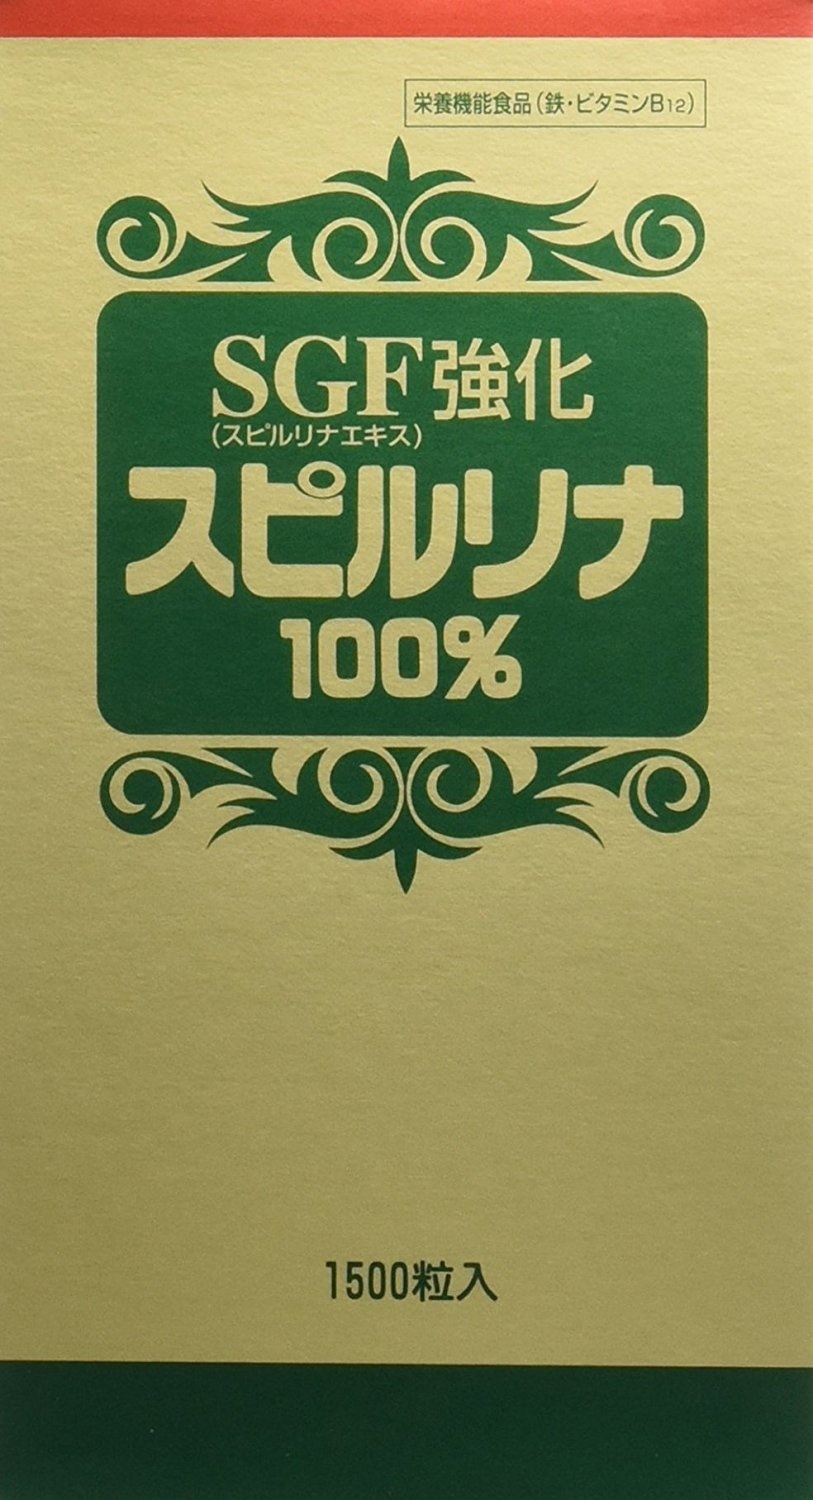 SPIRULINA 100% SGF Enriched 1500 tablets 螺旋藻 蓝藻